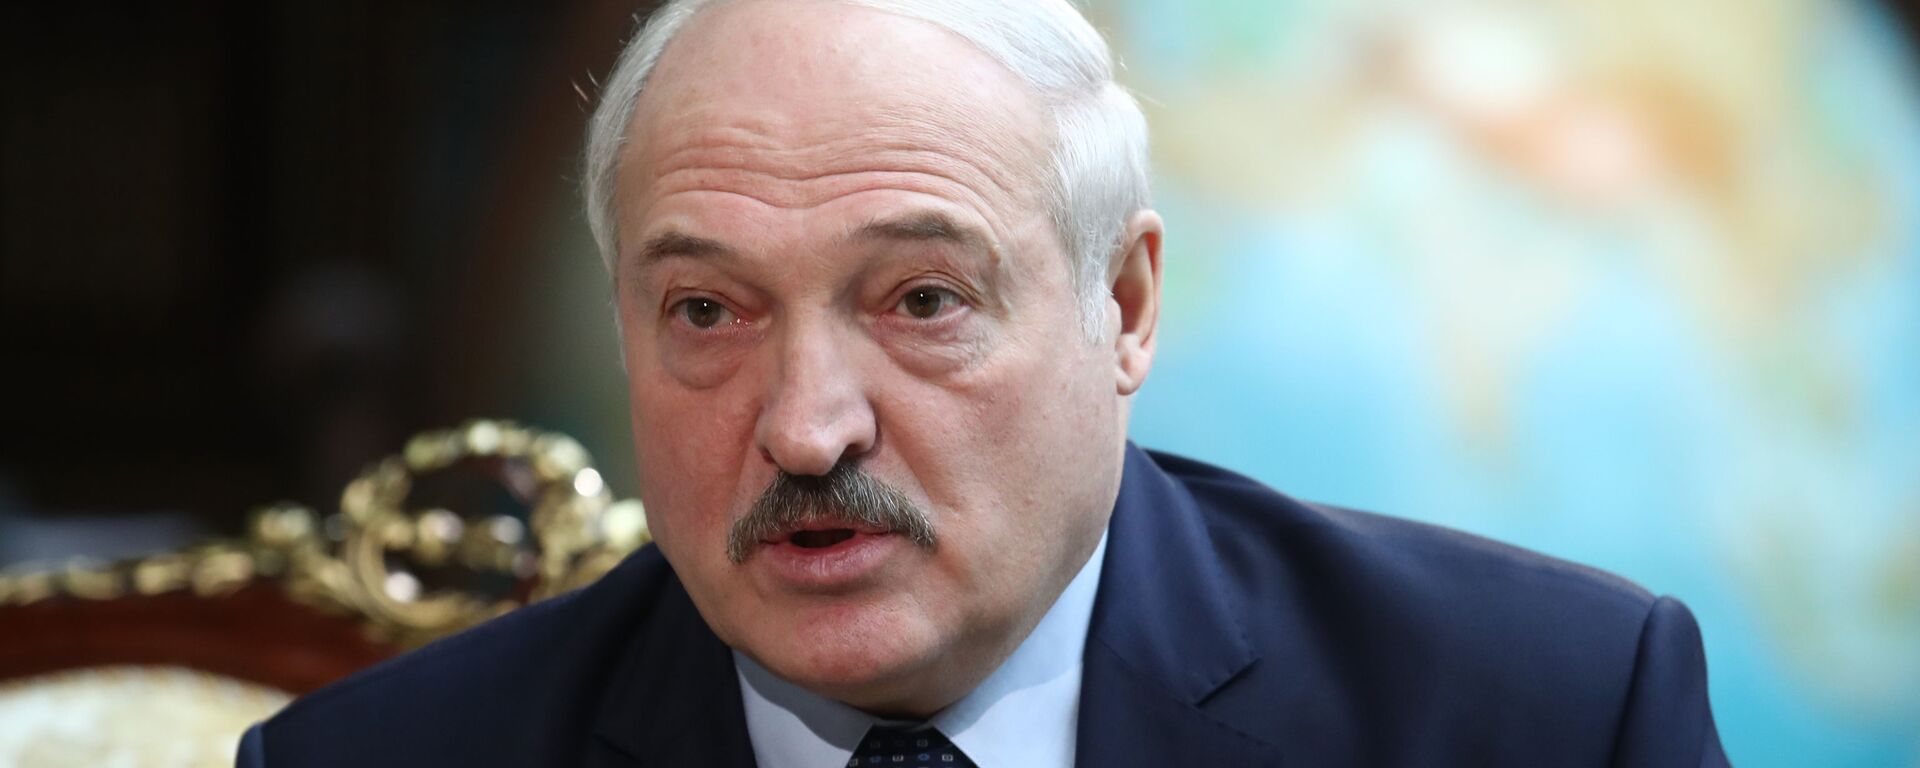 Alexandr Lukashenko, presidente de Bielorrusia  - Sputnik Mundo, 1920, 06.12.2021